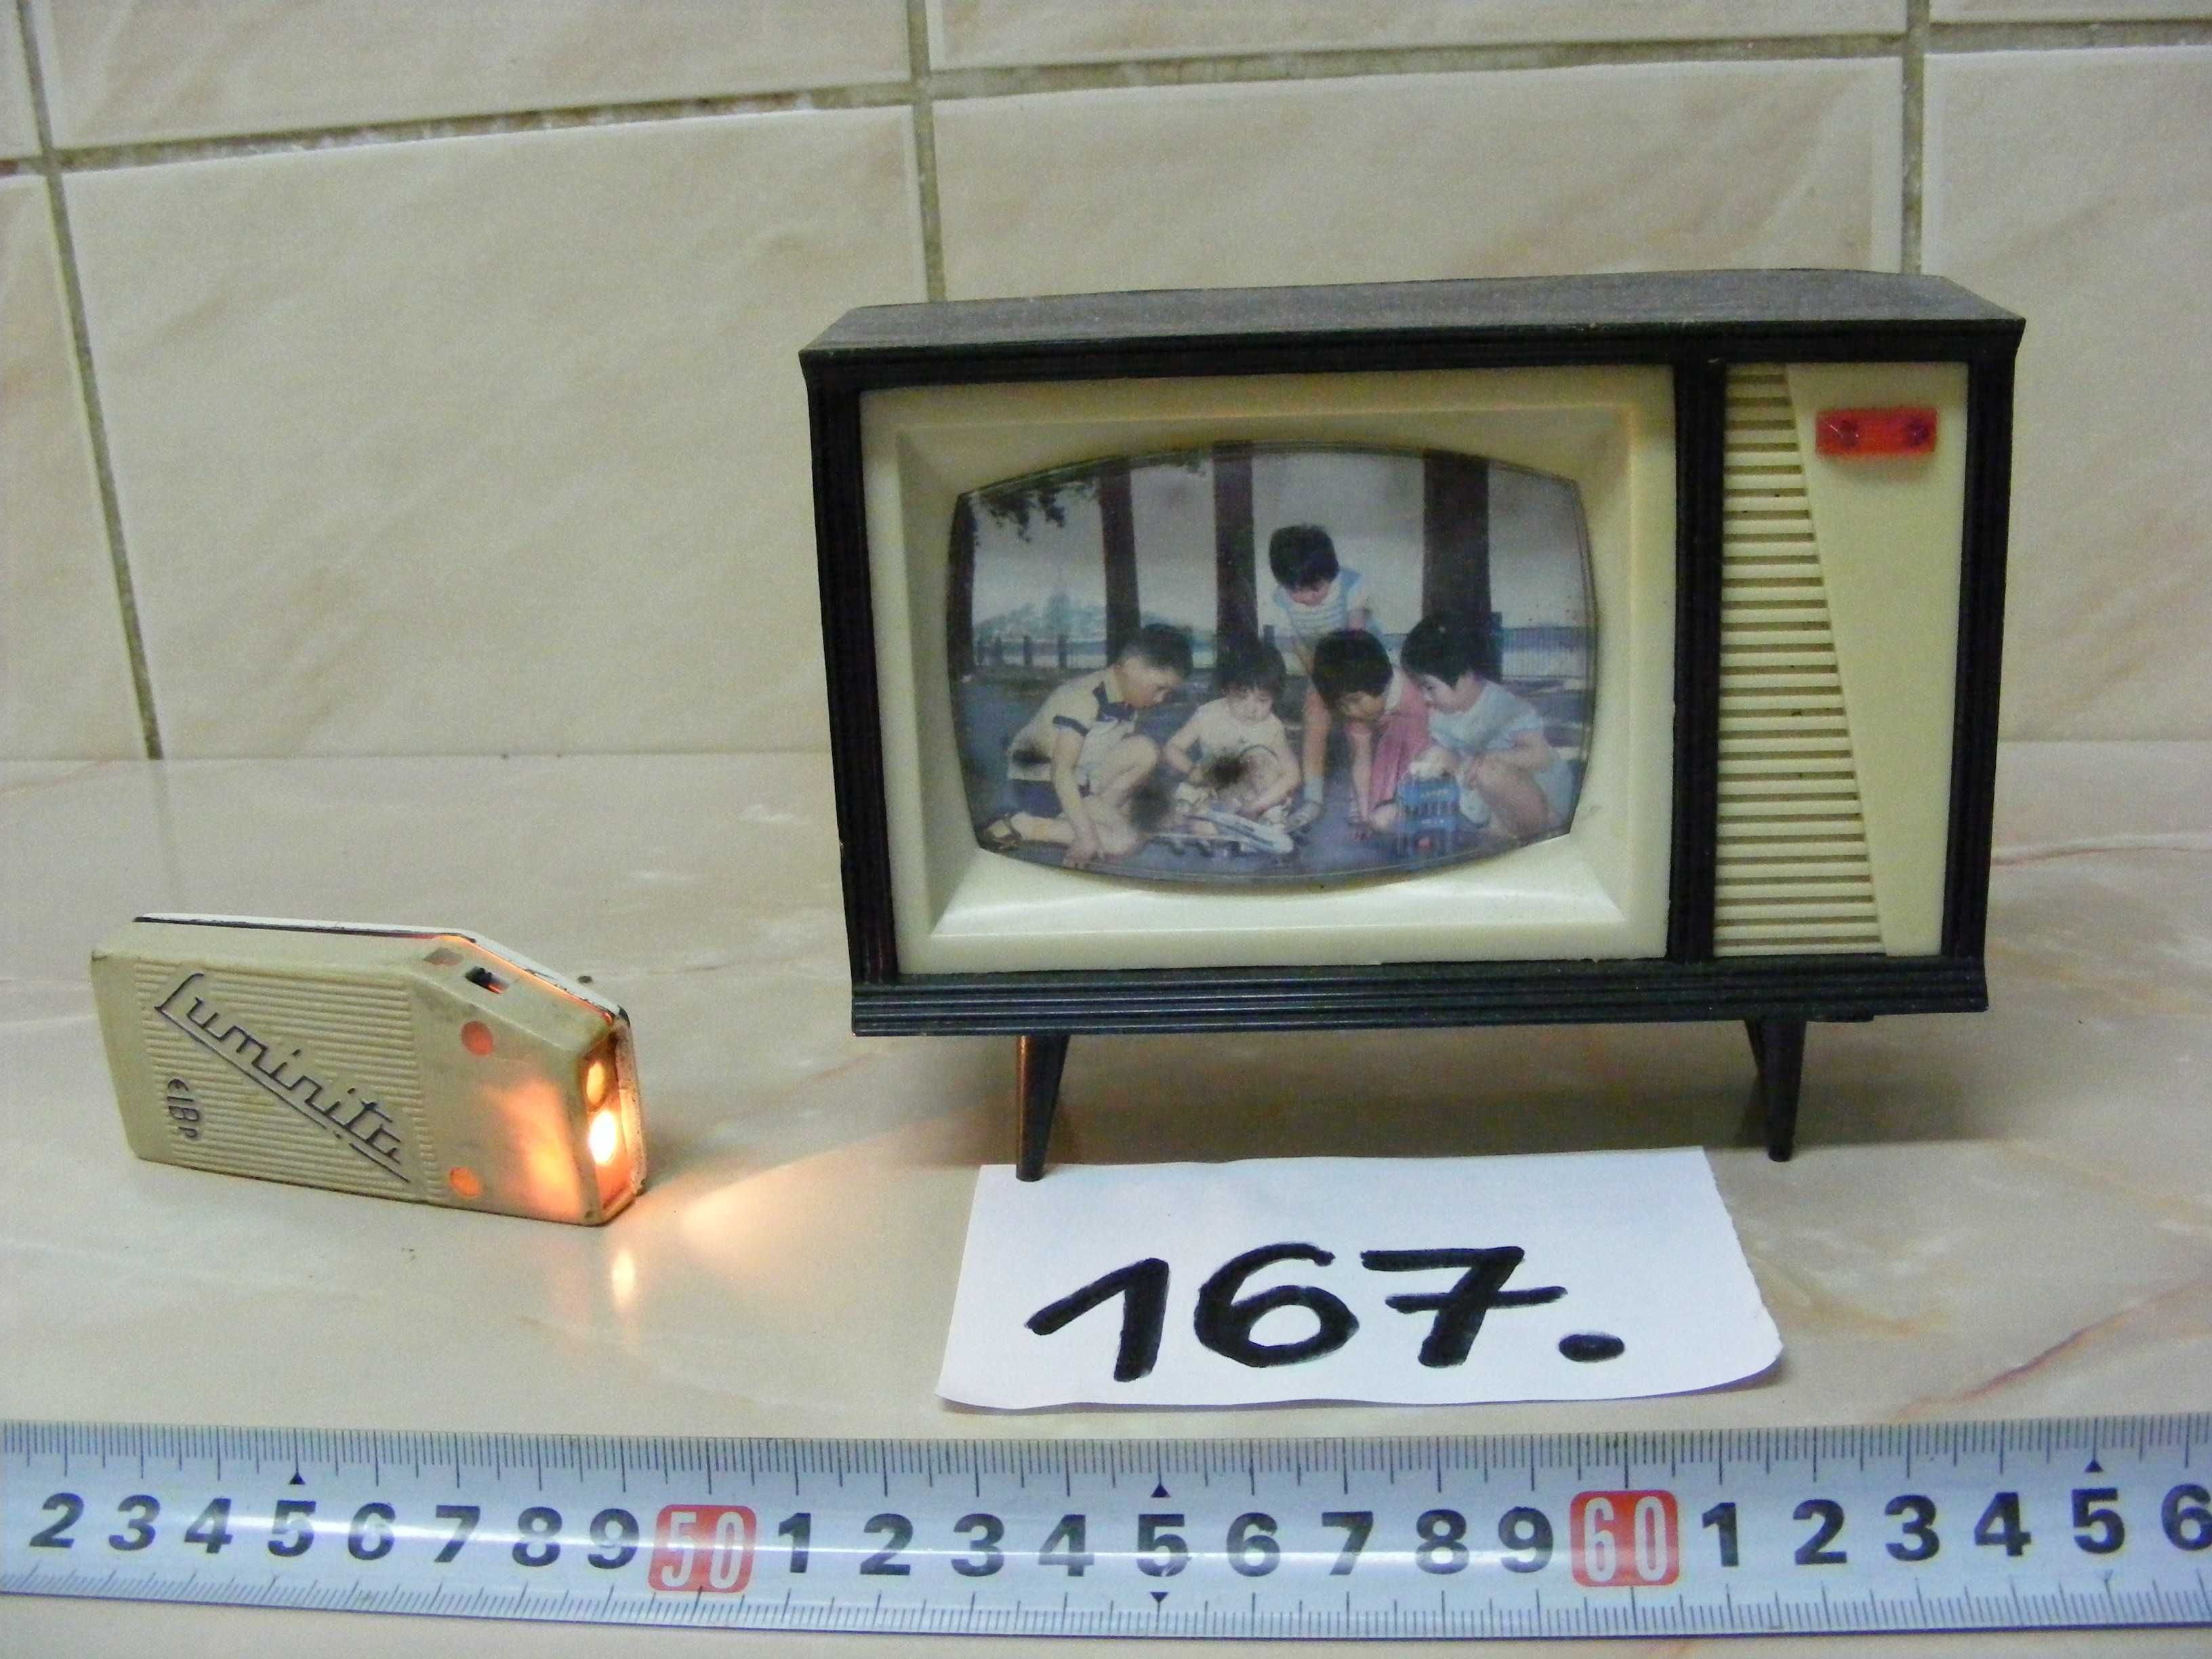 Lantenă ,,Luminița,, și pușculiță TV, anii 1970 (cod 167)